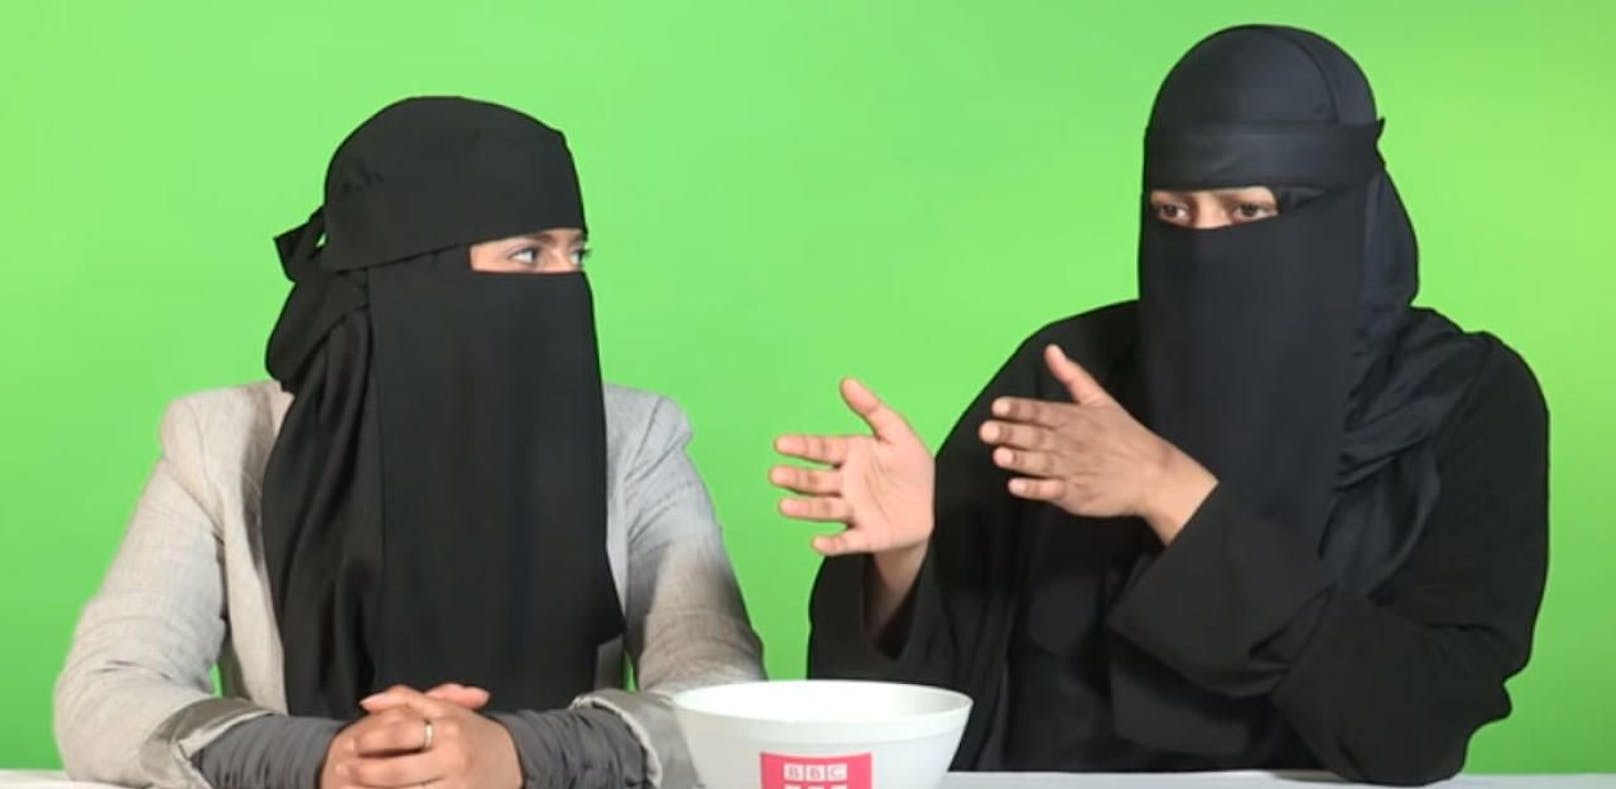 "Was man zu Frauen mit Burka nicht sagen sollte"